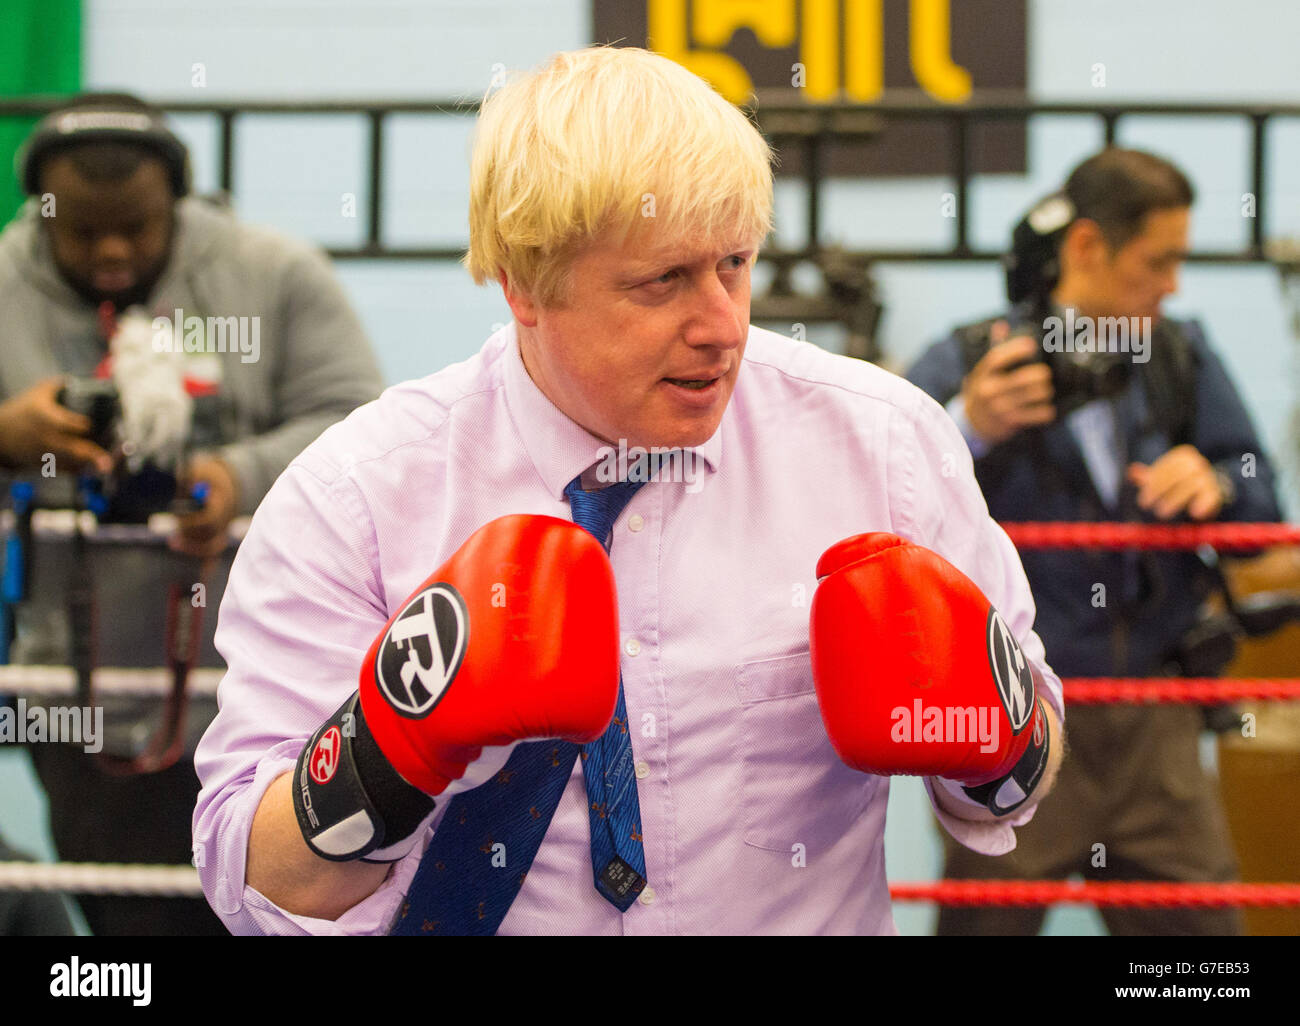 Il sindaco di Londra Boris Johnson partecipa a una sessione di pugilato durante una visita all'accademia di pugilato lotta per la pace, che lavora con i giovani a rischio di criminalità e violenza a North Woolwich, a est di Londra. Foto Stock